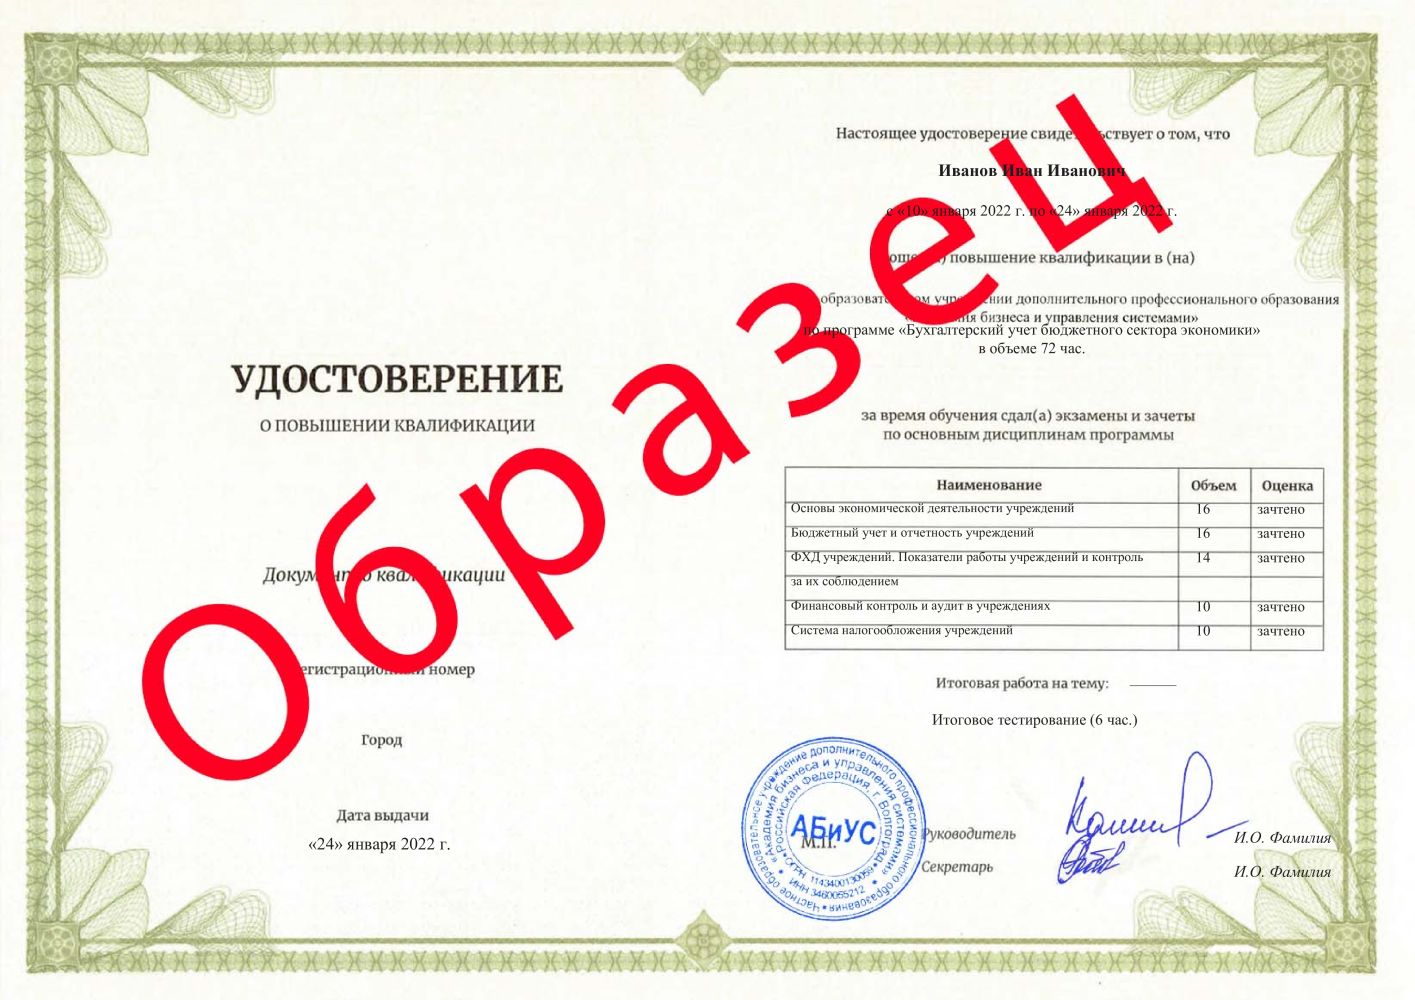 Удостоверение Бухгалтерский учет бюджетного сектора экономики 72 часа 6563 руб.